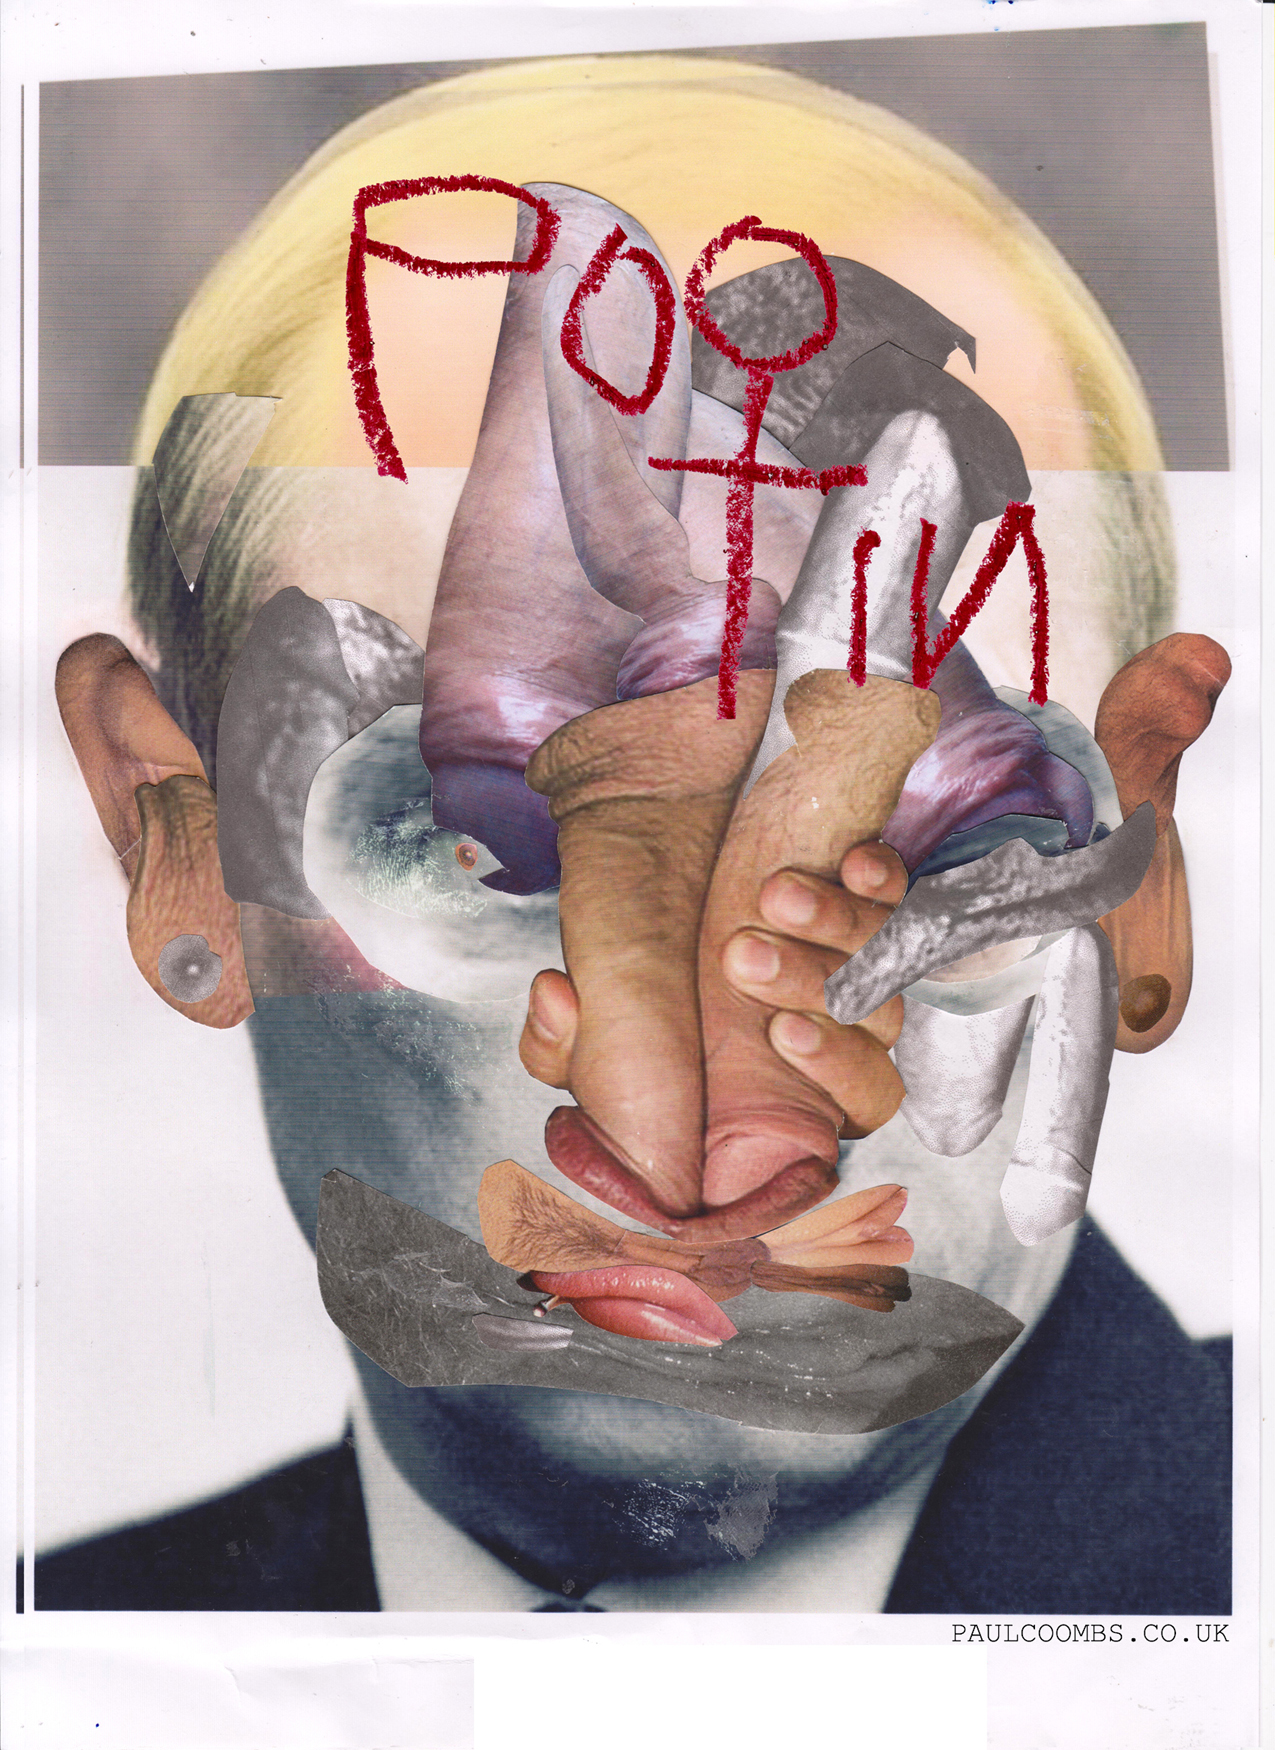 Pootin Fuck Face', artist, Paul Coombs, London, Deptford, New Cross Gate, Contemporary Art, Putin, Poo Tin, Vladimir Putin